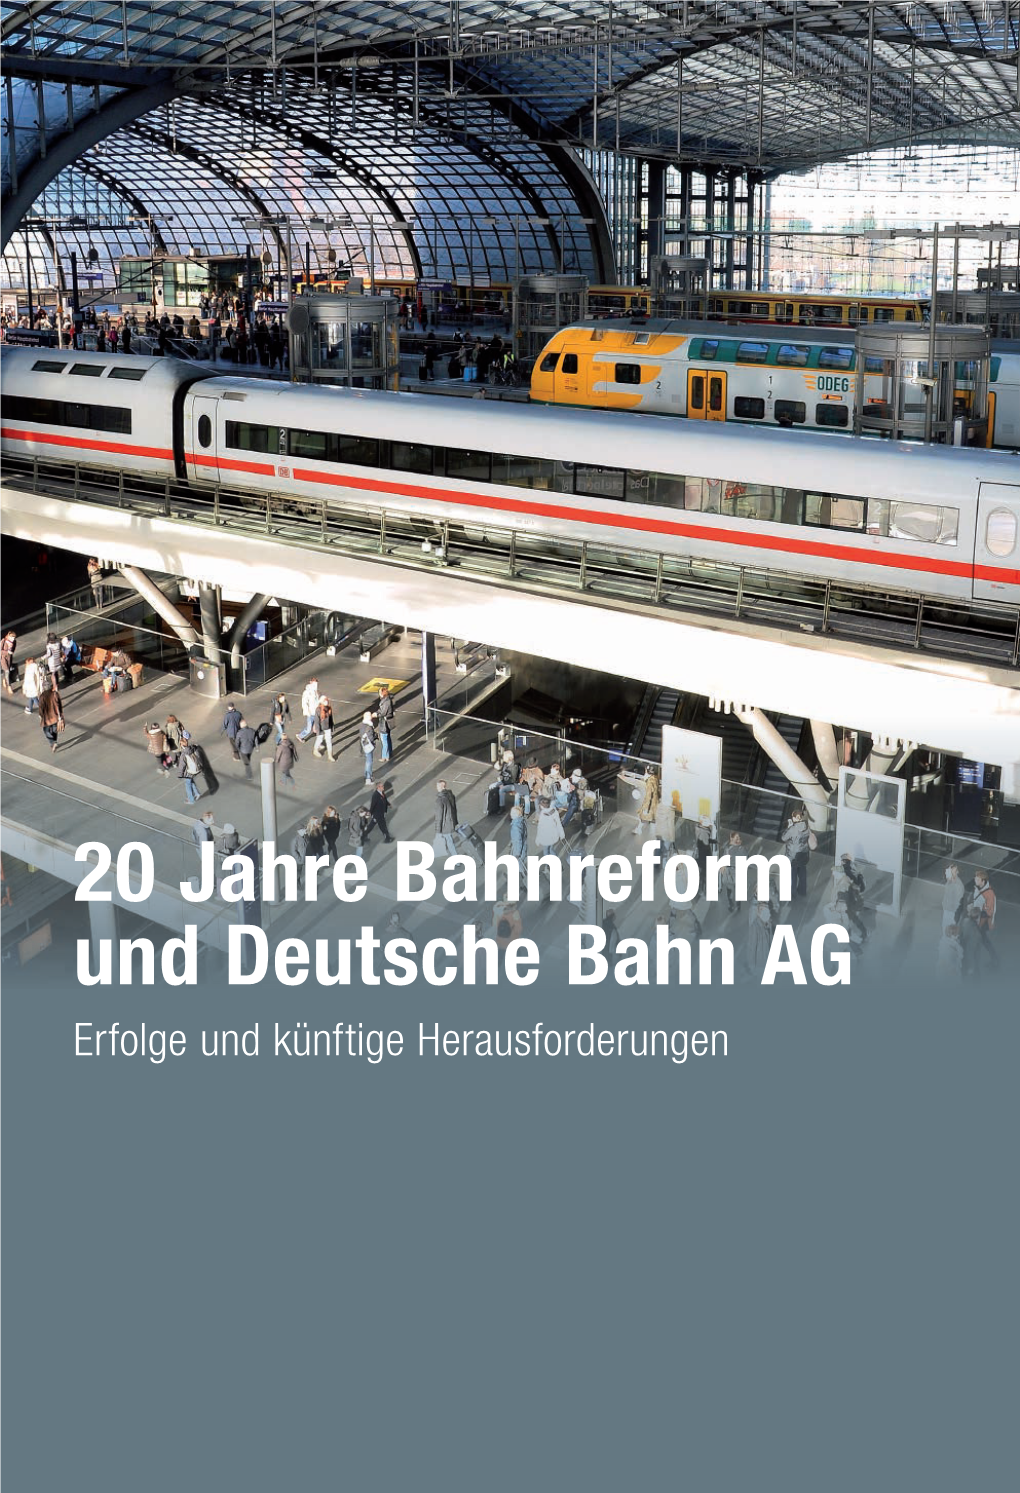 20 Jahre Bahnreform Und Deutsche Bahn AG Erfolge Und Künftige Herausforderungen Herausforderungen Künftige Und Erfolge AG Bahn Deutsche Und Bahnreform Jahre 20